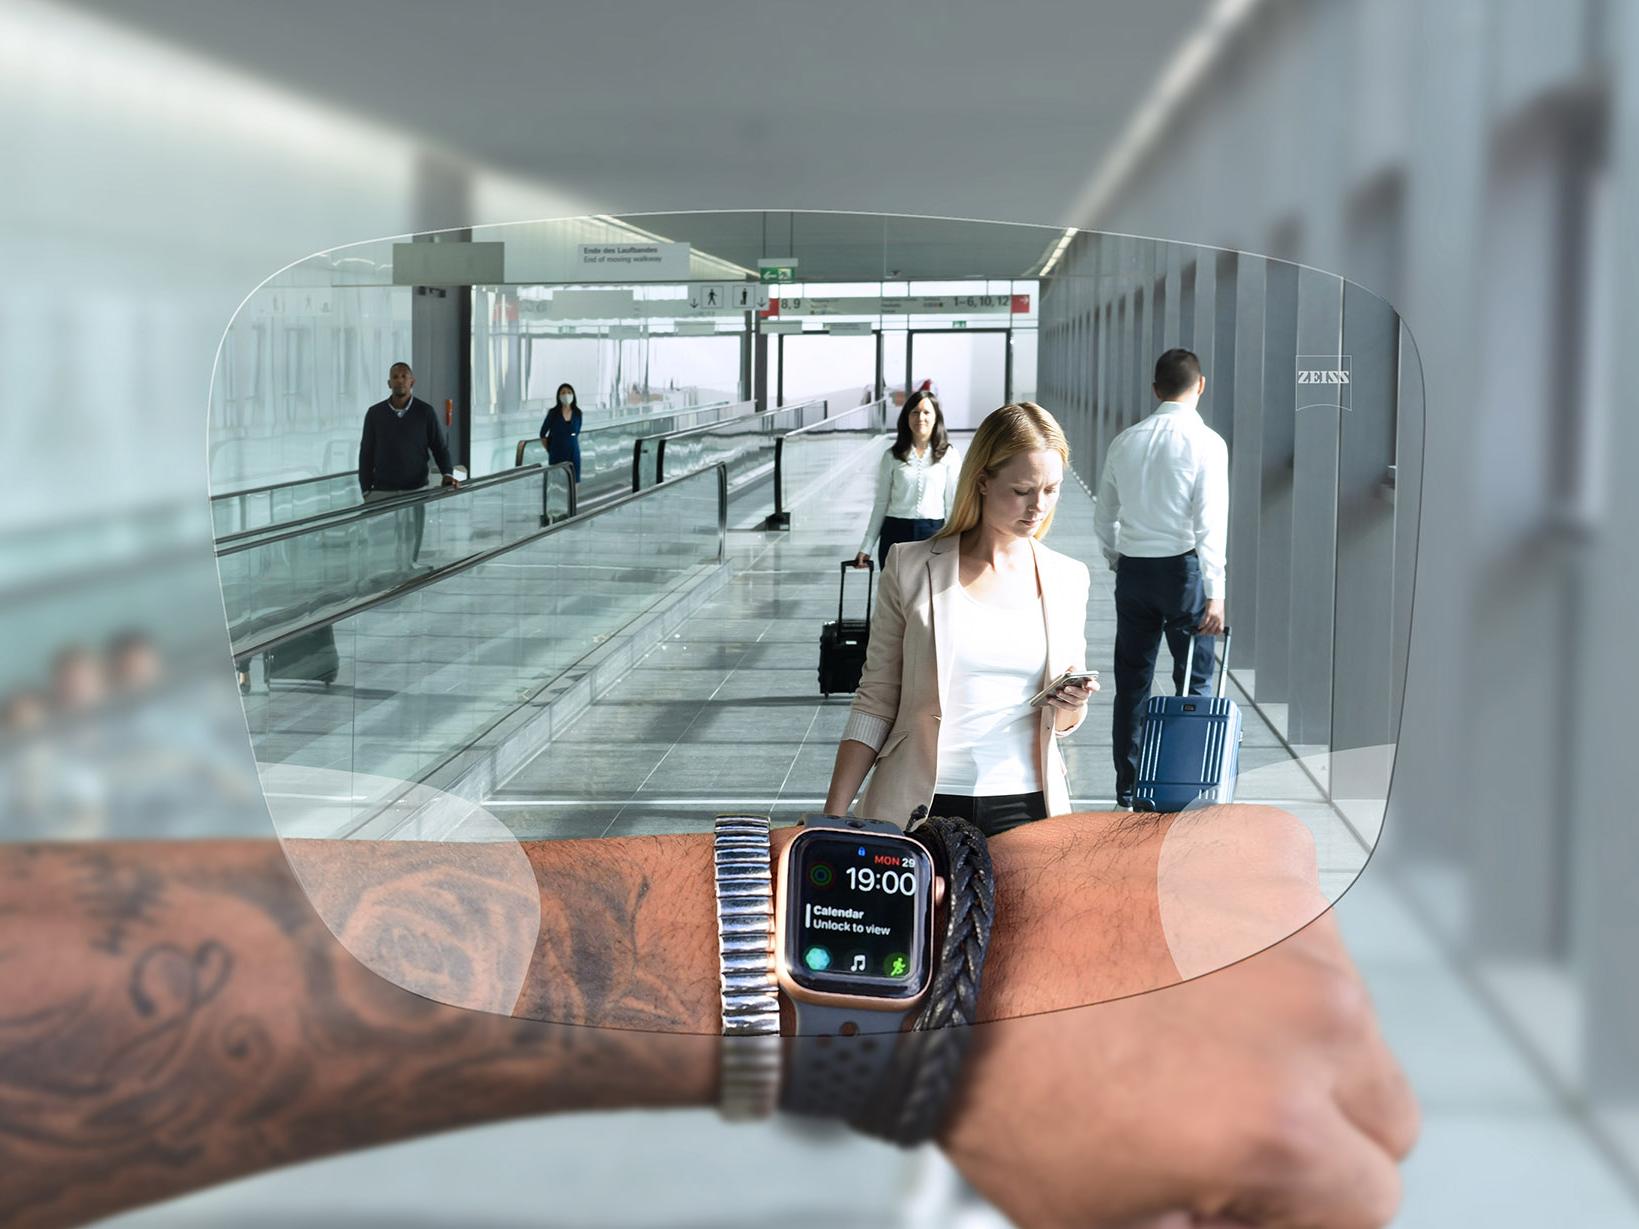 透過蔡司SmartLife智銳數位鏡片看手錶的人 背景可看見人們推著行李箱上下電扶梯的典型機場情景。 